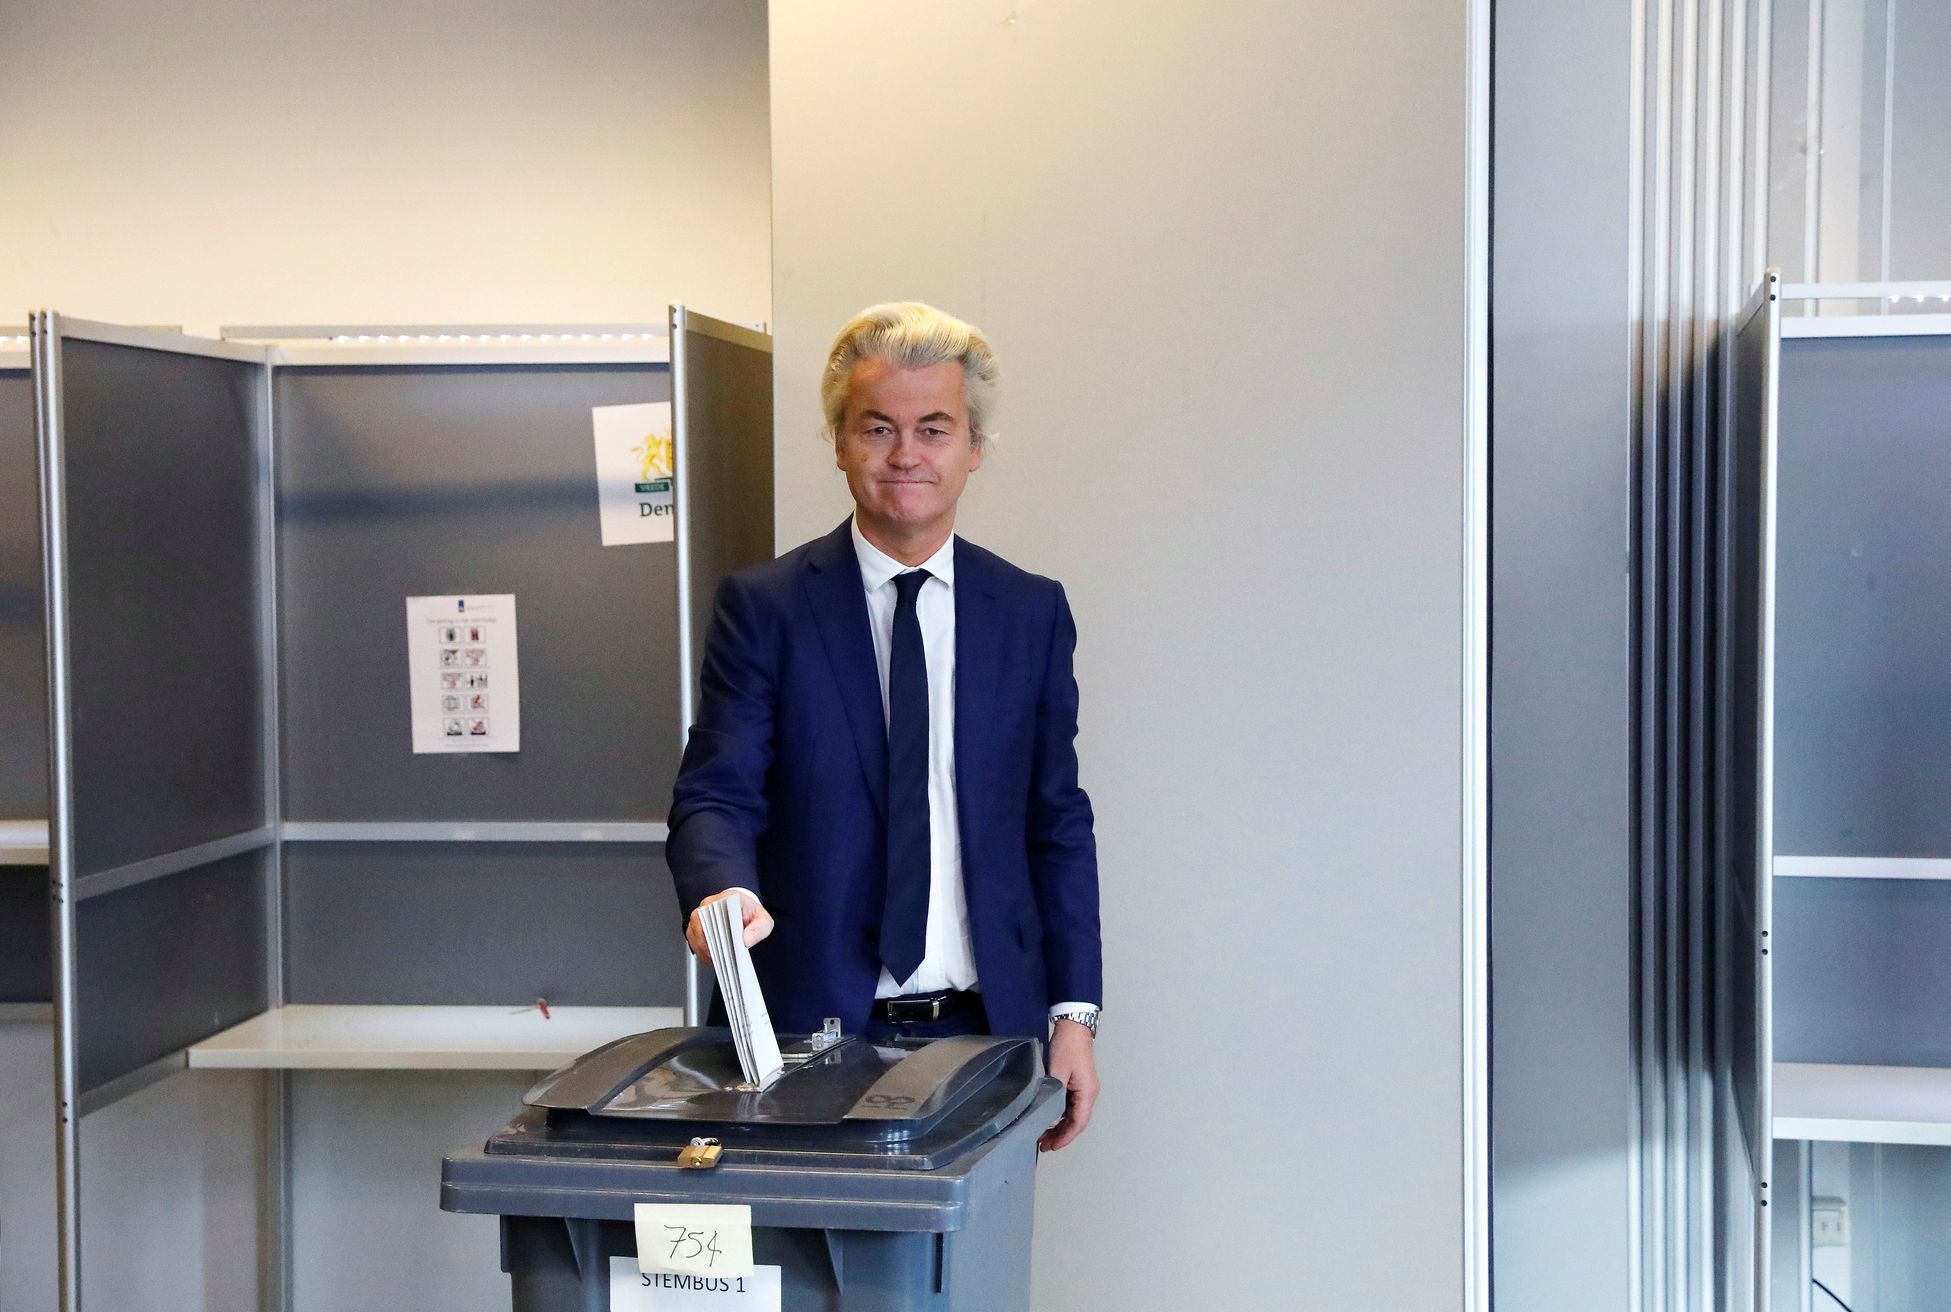 Nizozemsko volby